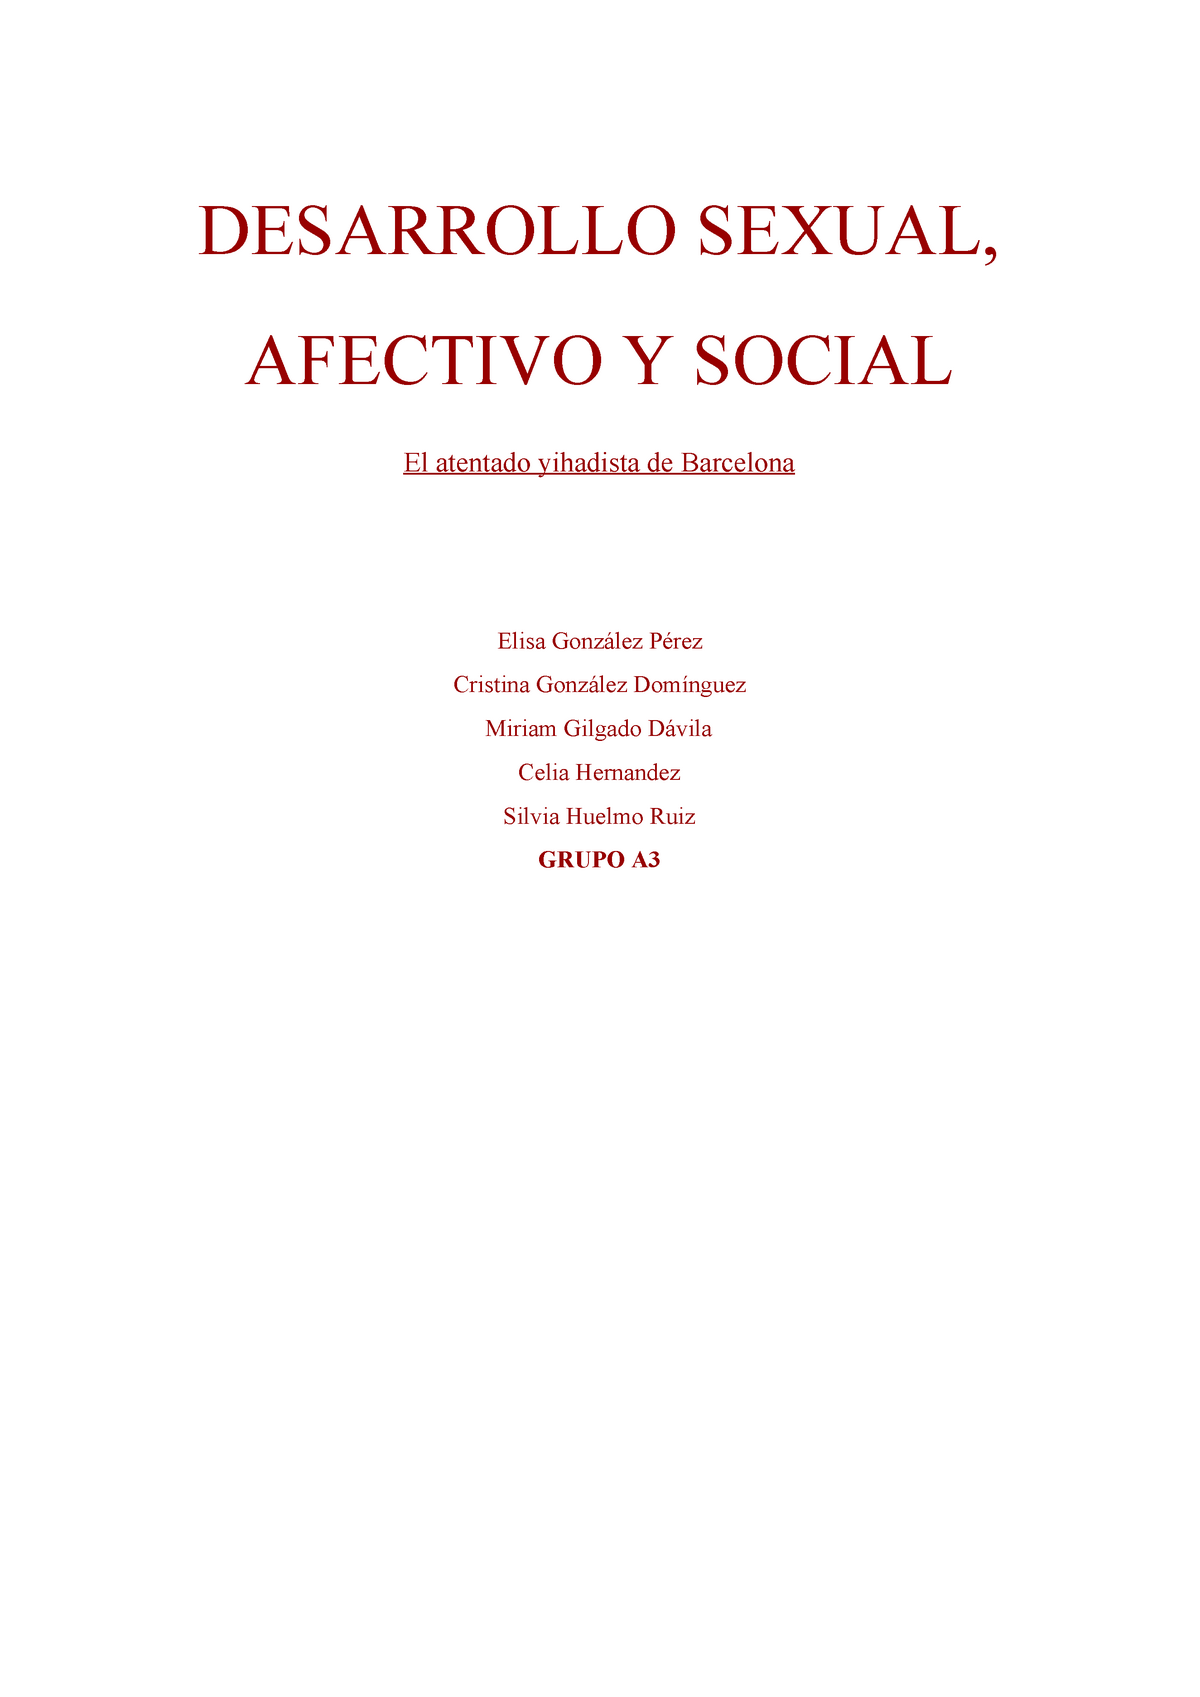 Trabajo Desarrollo Sexual Afectivo Y Social Desarrollo Sexual Afectivo Y Social El Atentado 6014